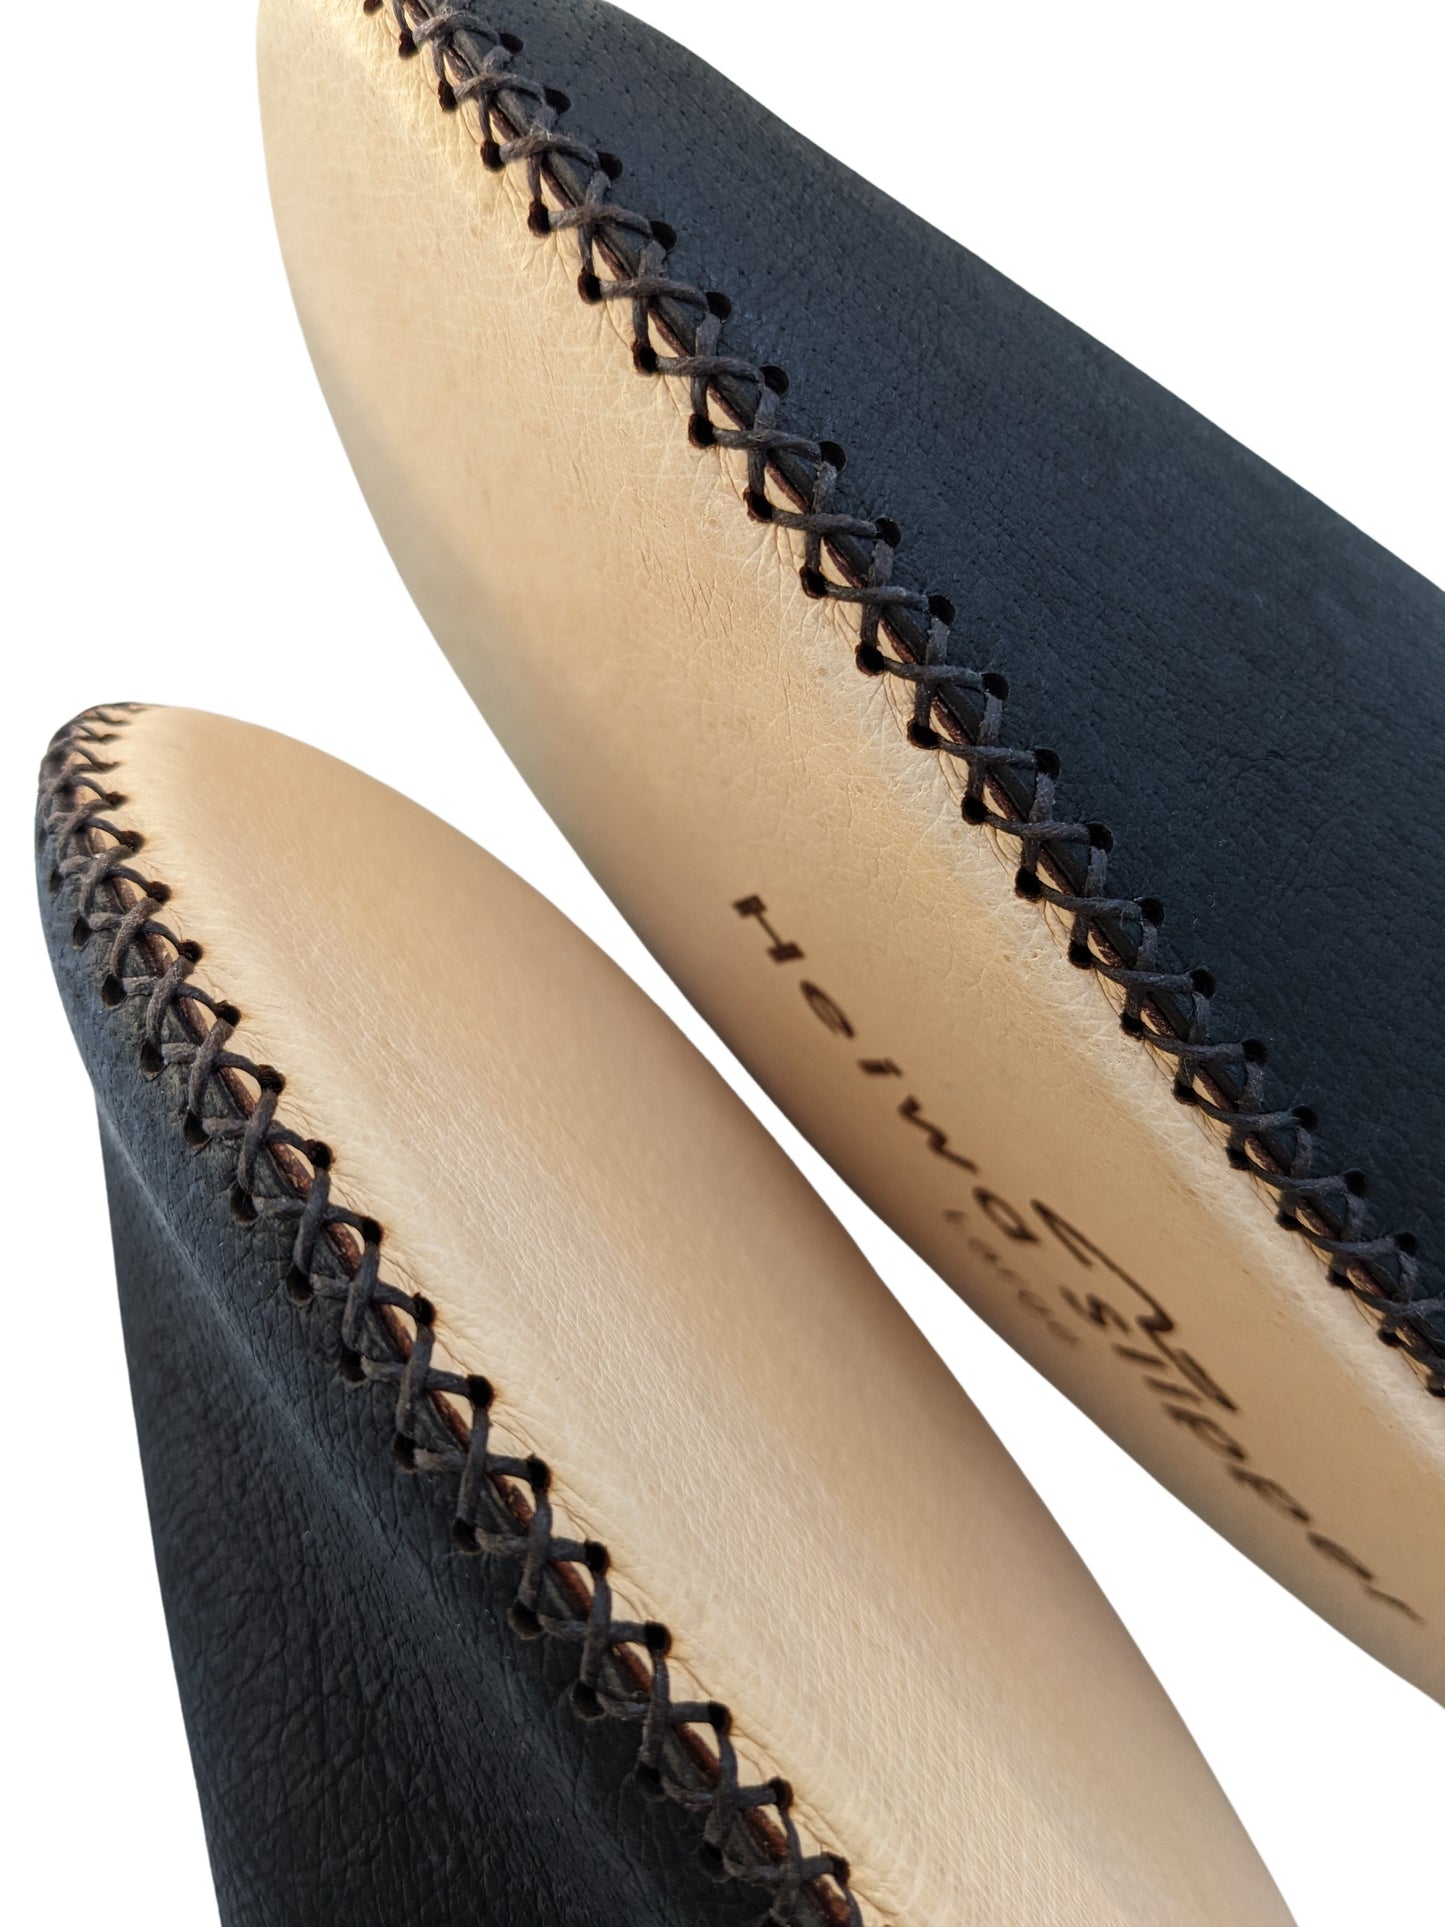 Tokyo Leather Heiwa Slippers [Black]